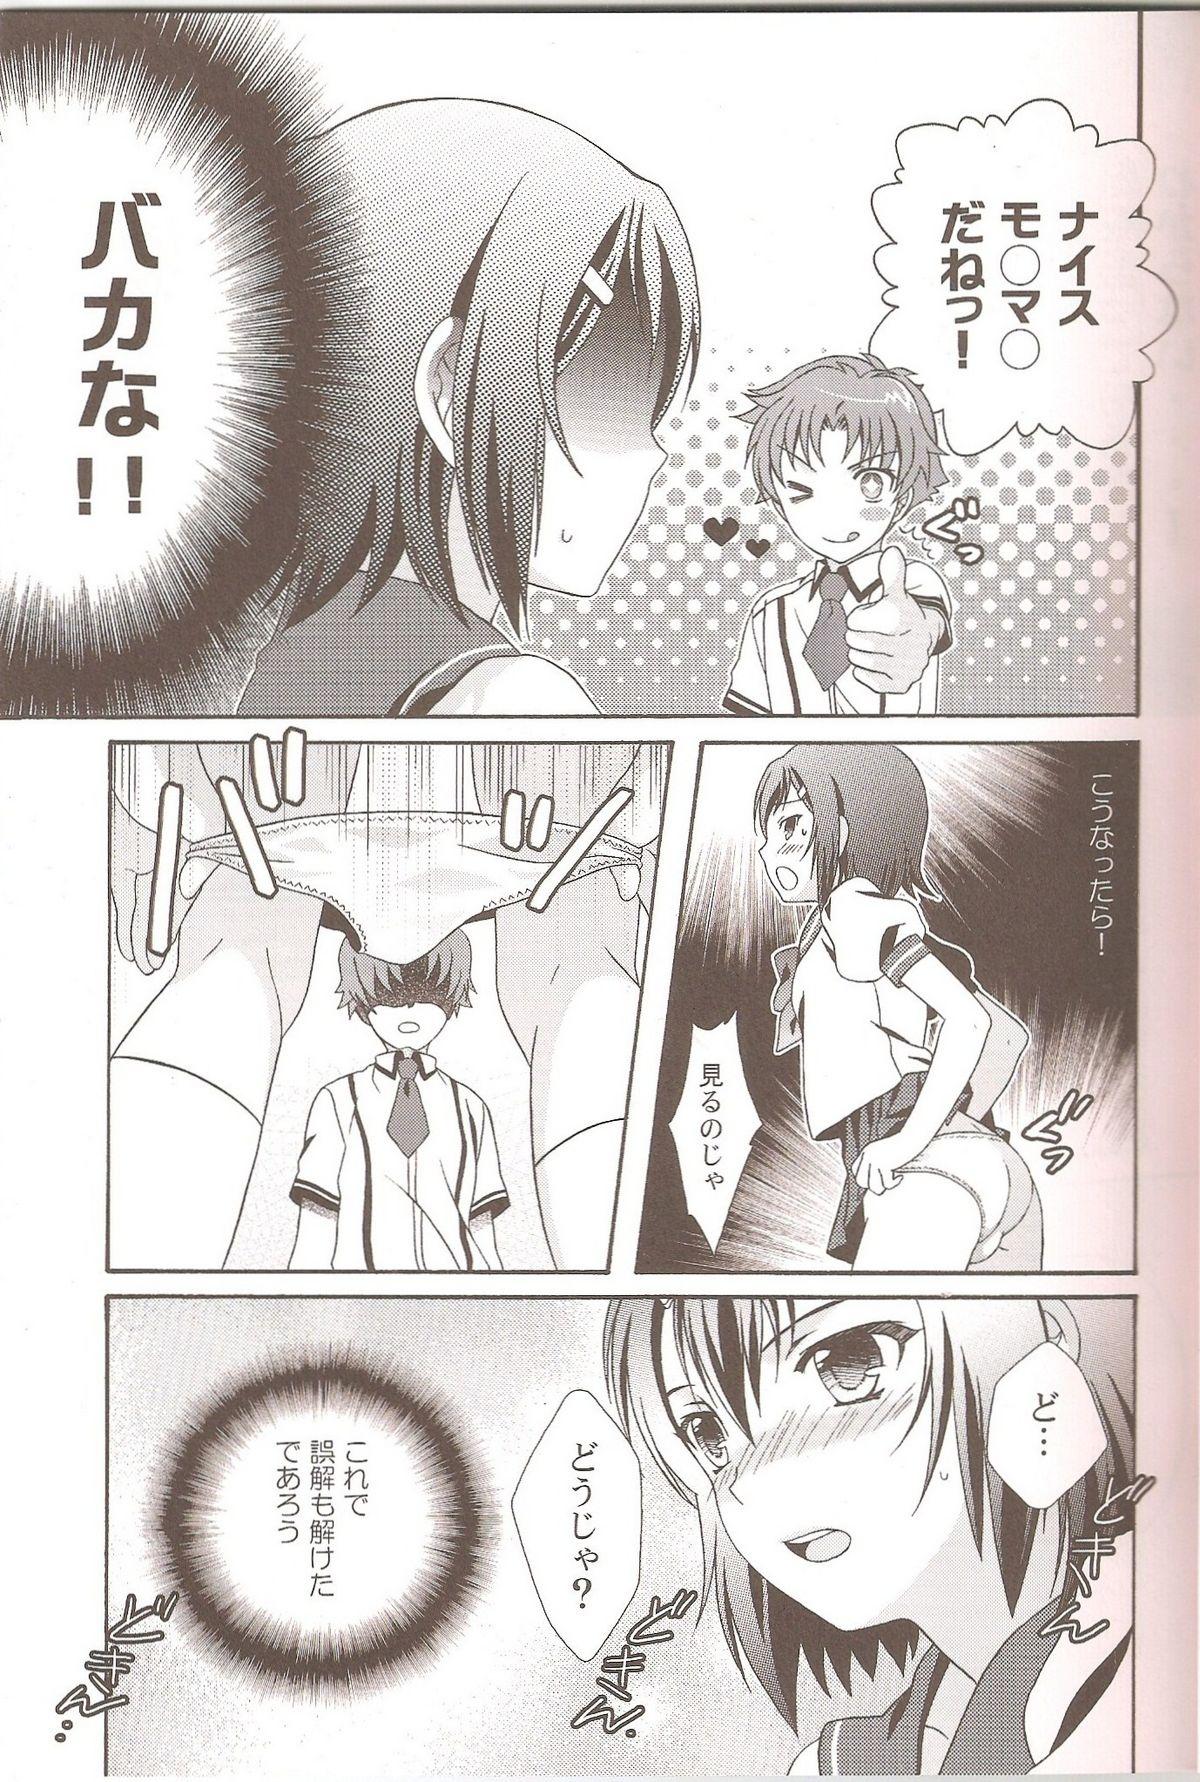 Short Otoko no Ko no Hon - Baka to test to shoukanjuu Minami-ke Shugo chara Big Natural Tits - Page 4